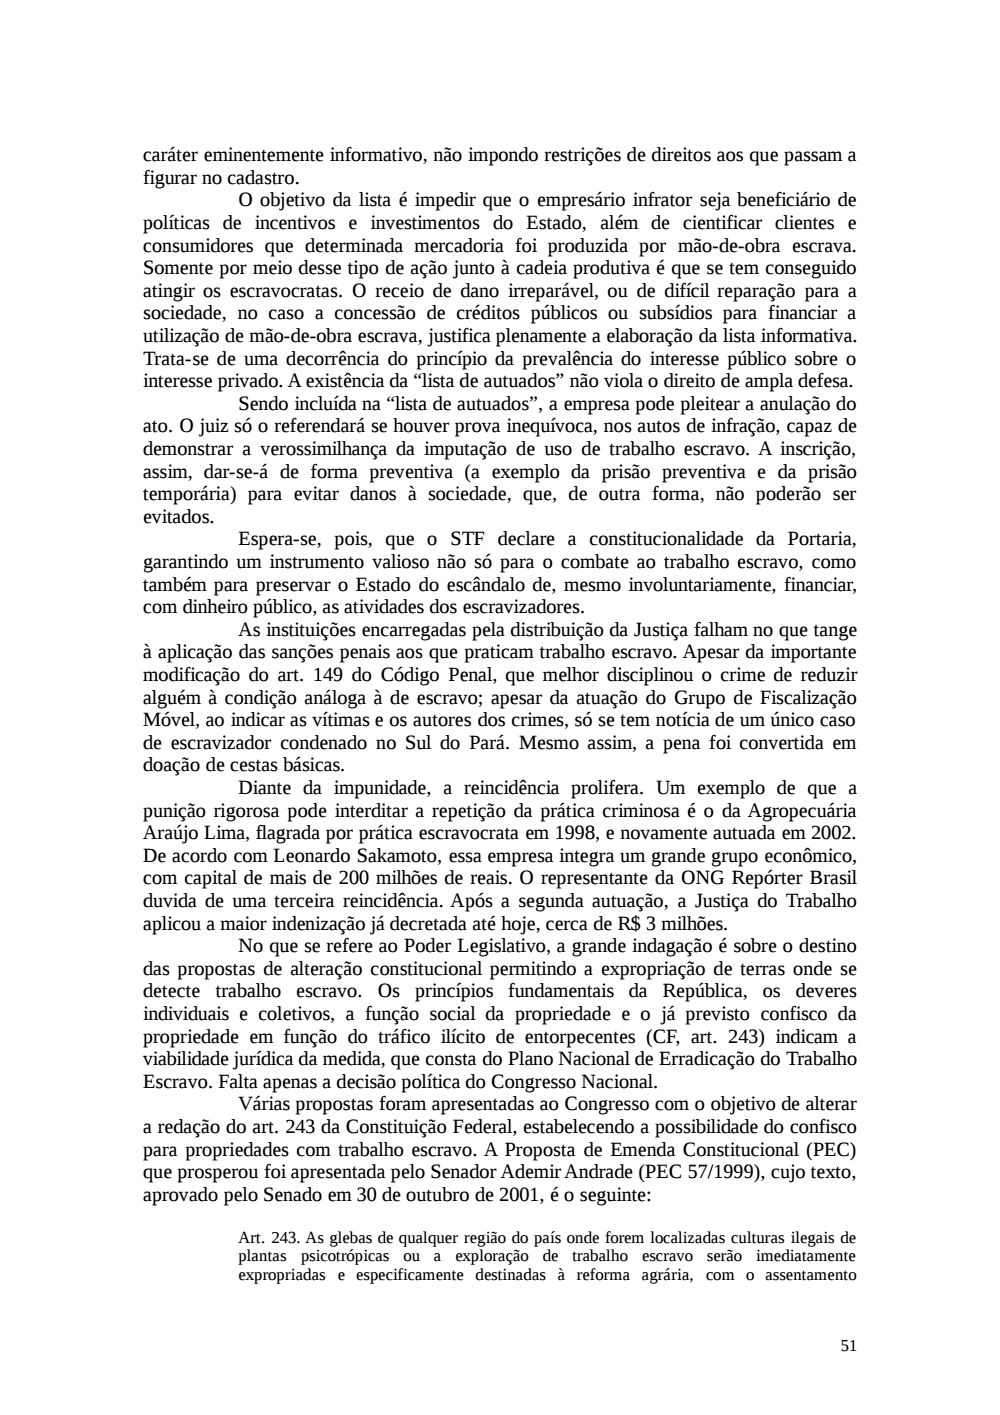 Page 51 from Relatório final da comissão